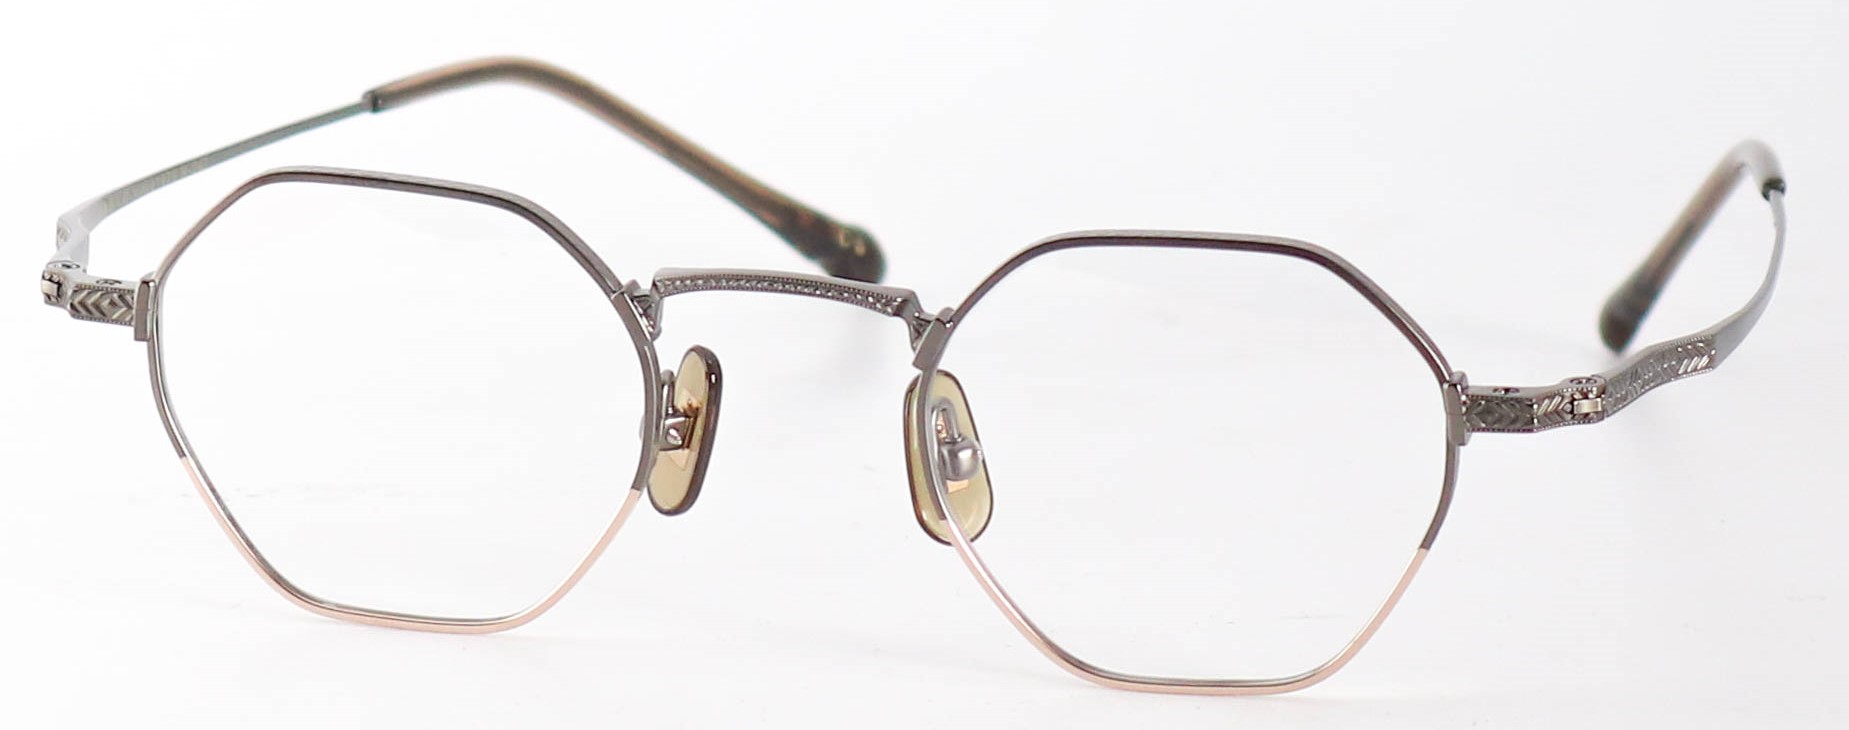 眼鏡のカラータイプC-5 Gray-Matt/Gold-Matt